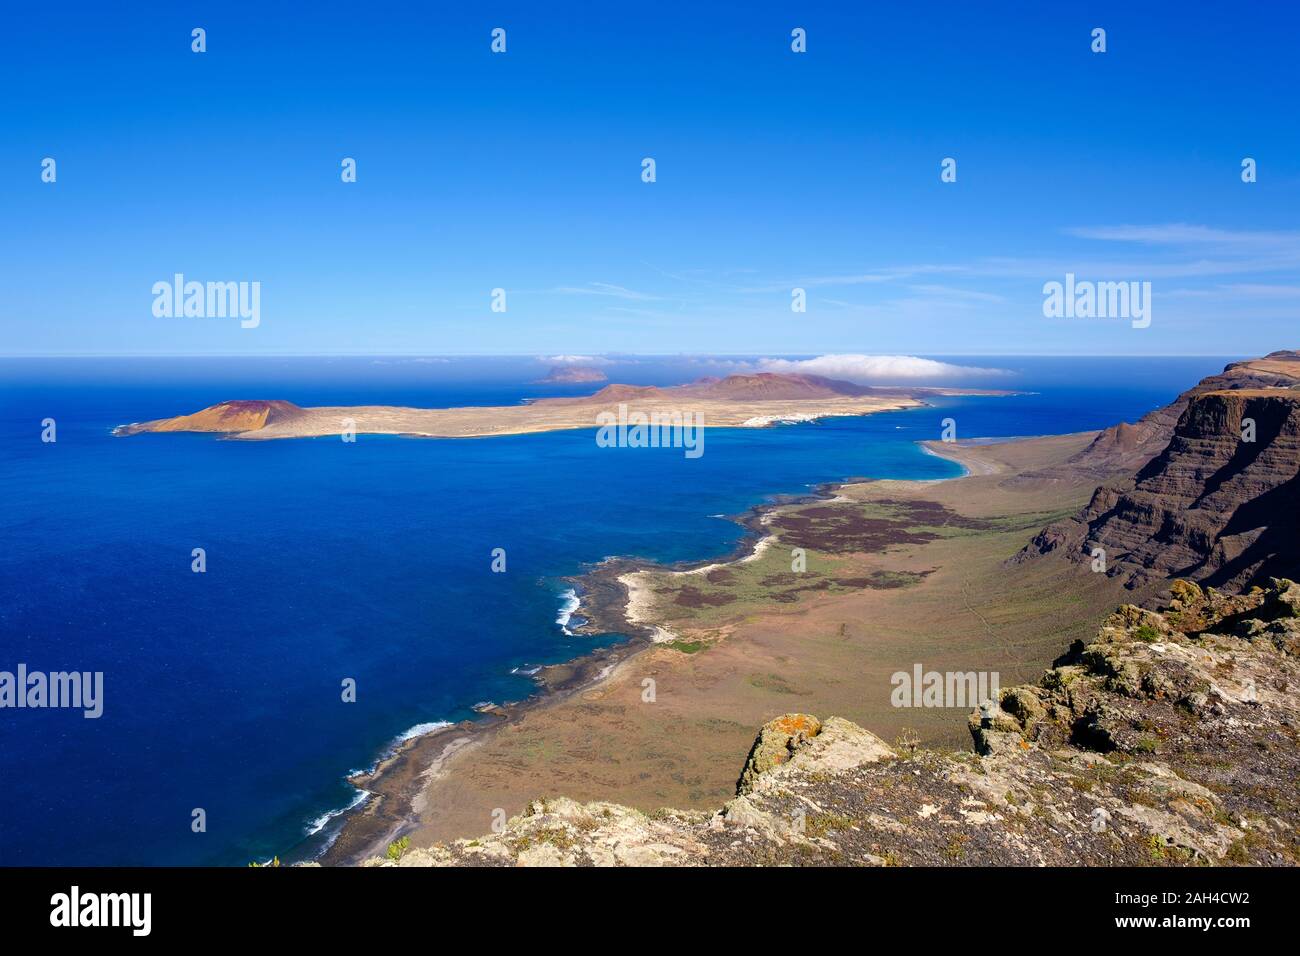 España, Islas Canarias, vista panorámica del islote Montana Clara visto desde el acantilado costero de La Graciosa Foto de stock